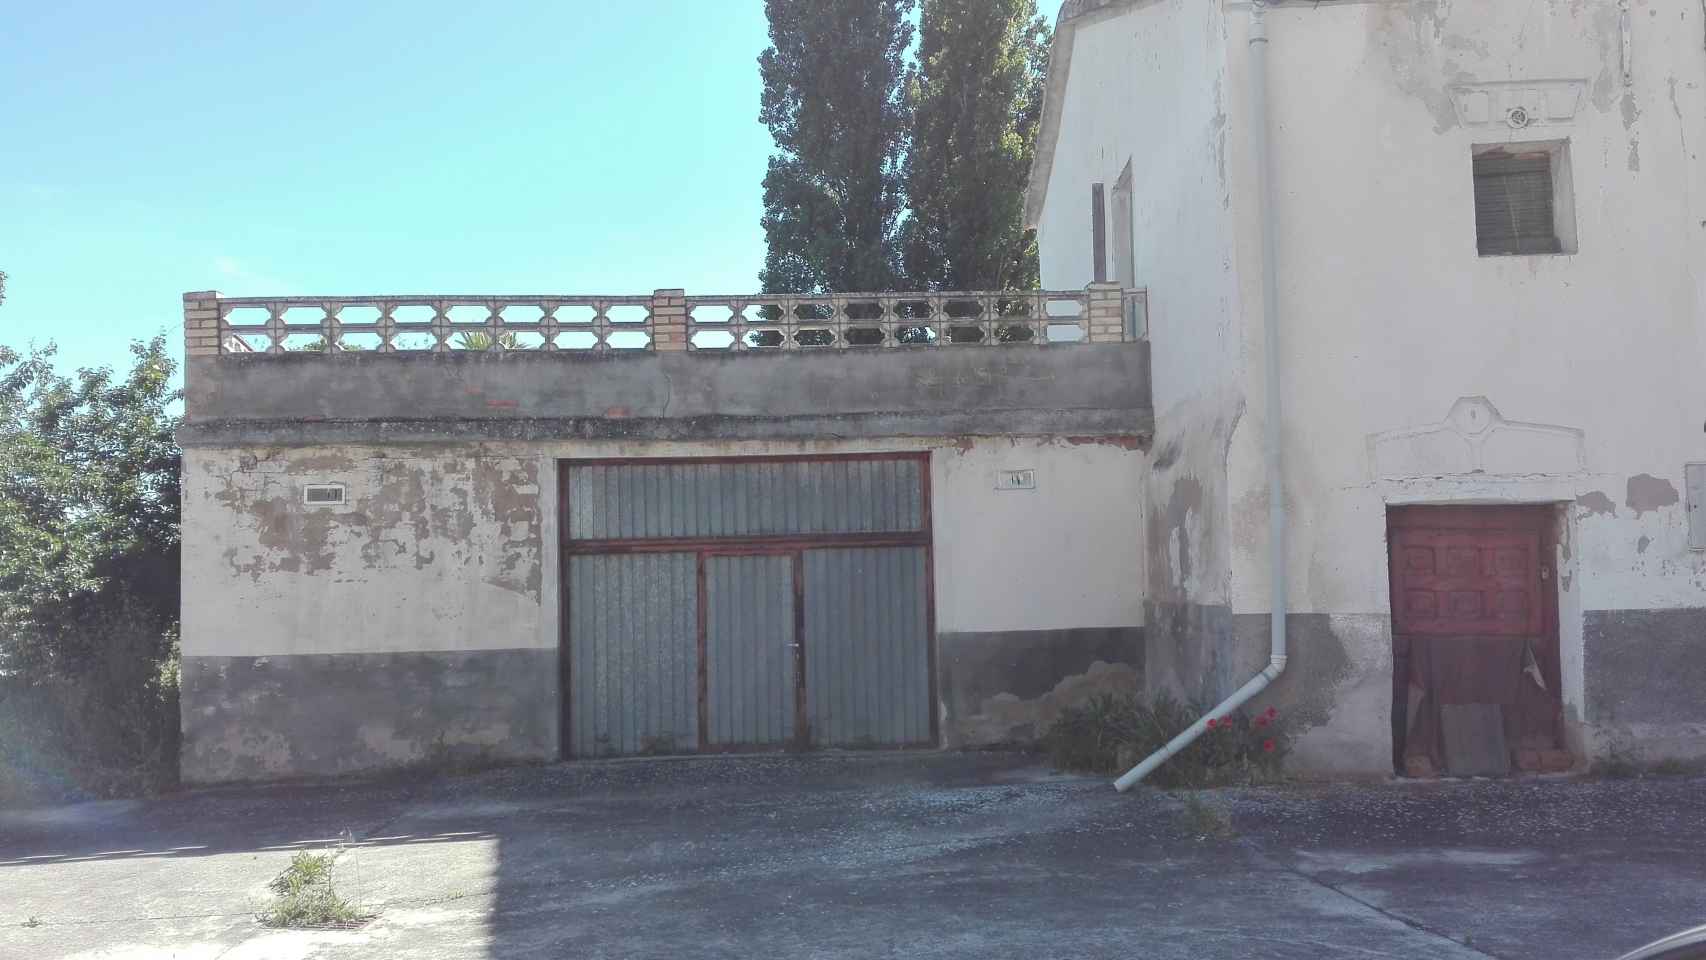 Tras esa puerta escondió Ángel Ruiz el Peugeot 205 con el que atropelló mortalmente a una anciana de 85 años.